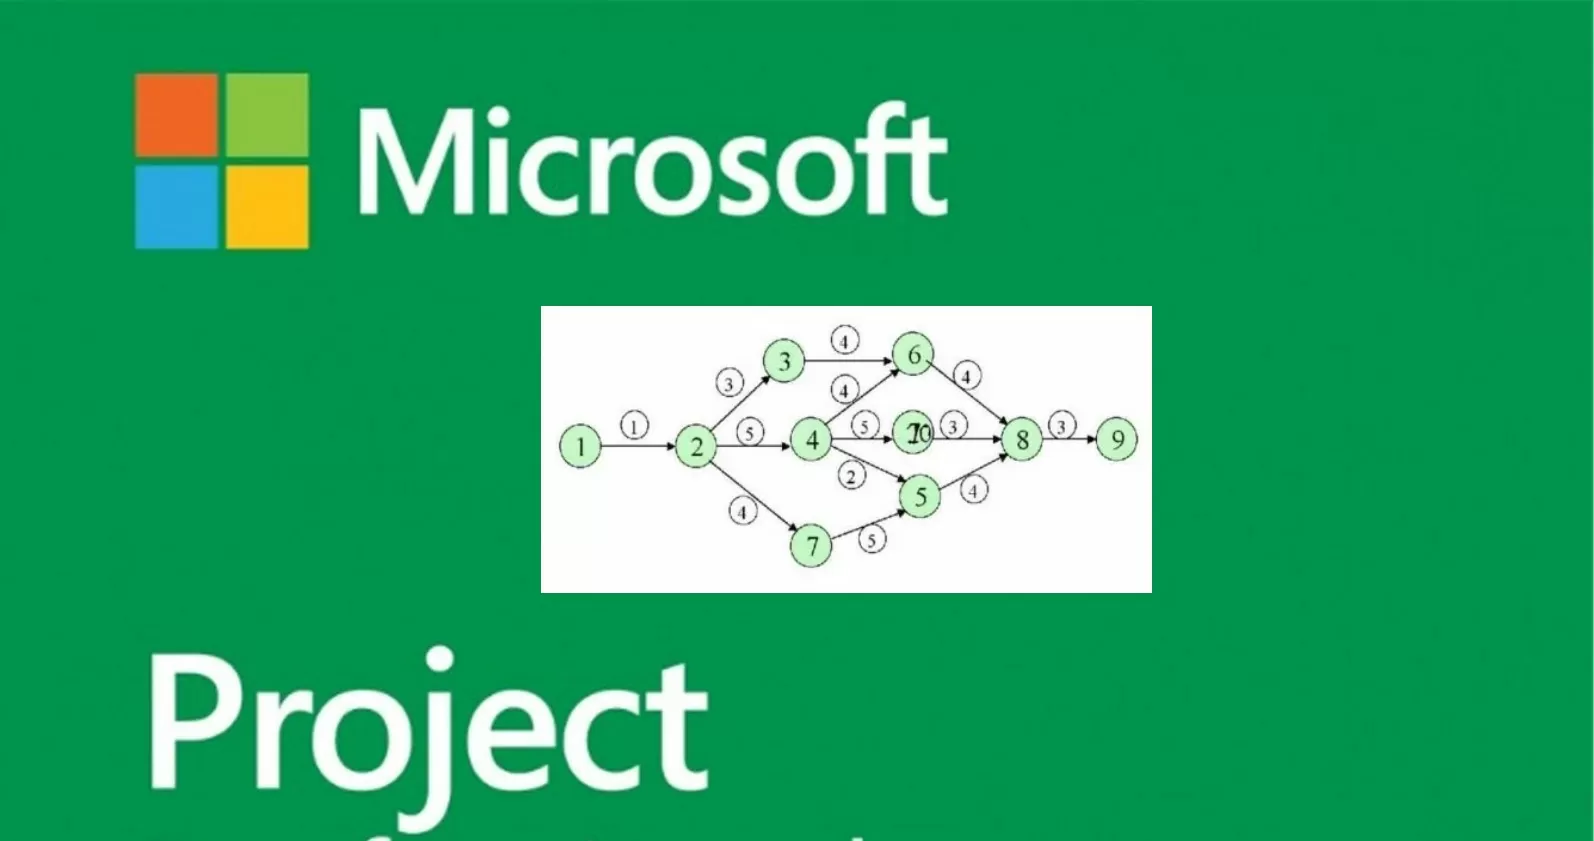 Kuinka tehdä raportteja ja miten saada strukturoitua tietoa projektista, jota hallitaan MS Projektin avulla